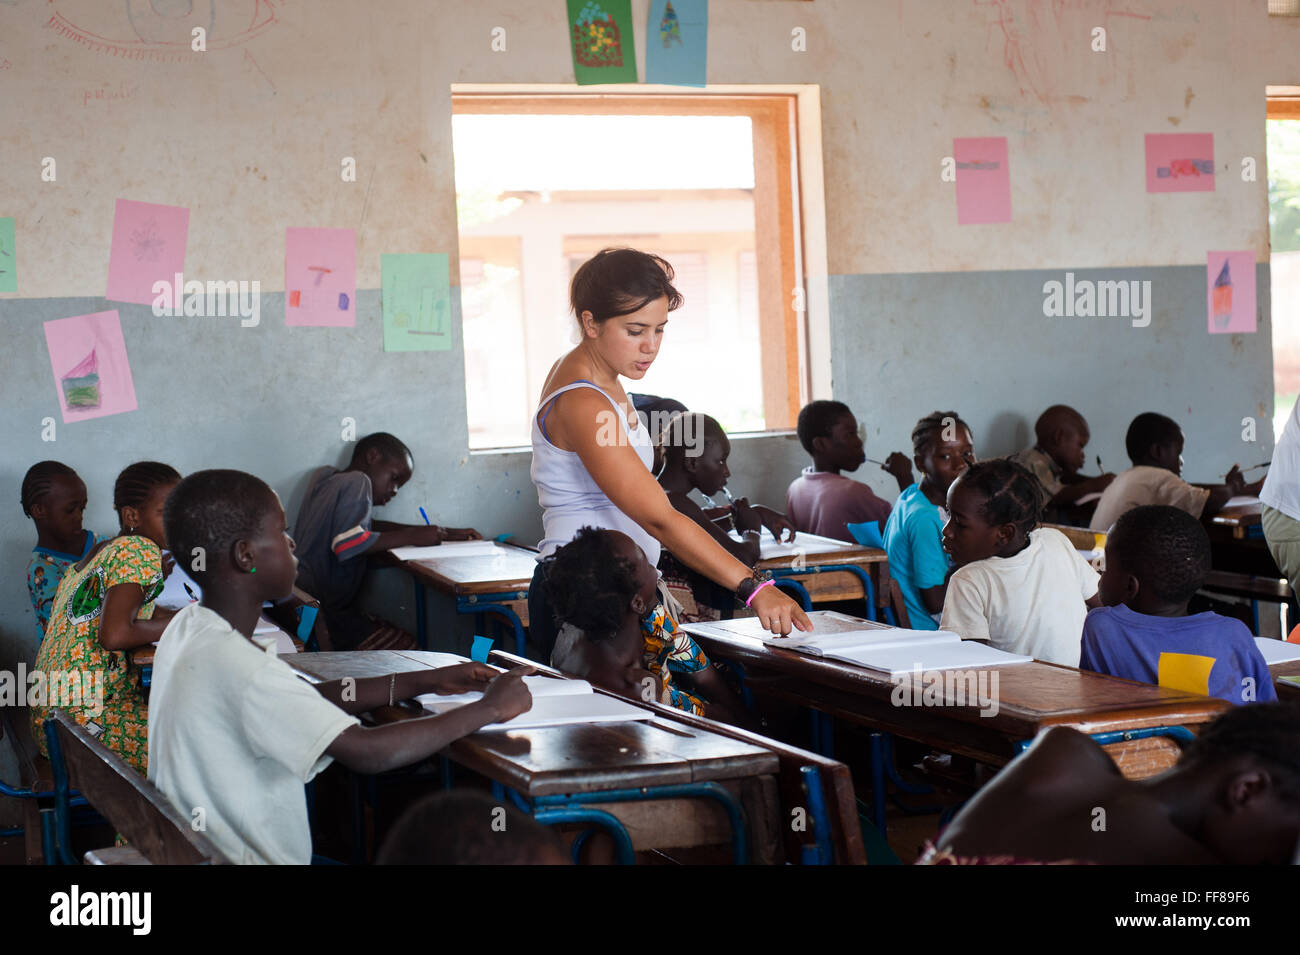 Mali, Afrique - les blancs de l'enseignement pour les enfants noirs dans une classe typique près de Bamako Banque D'Images